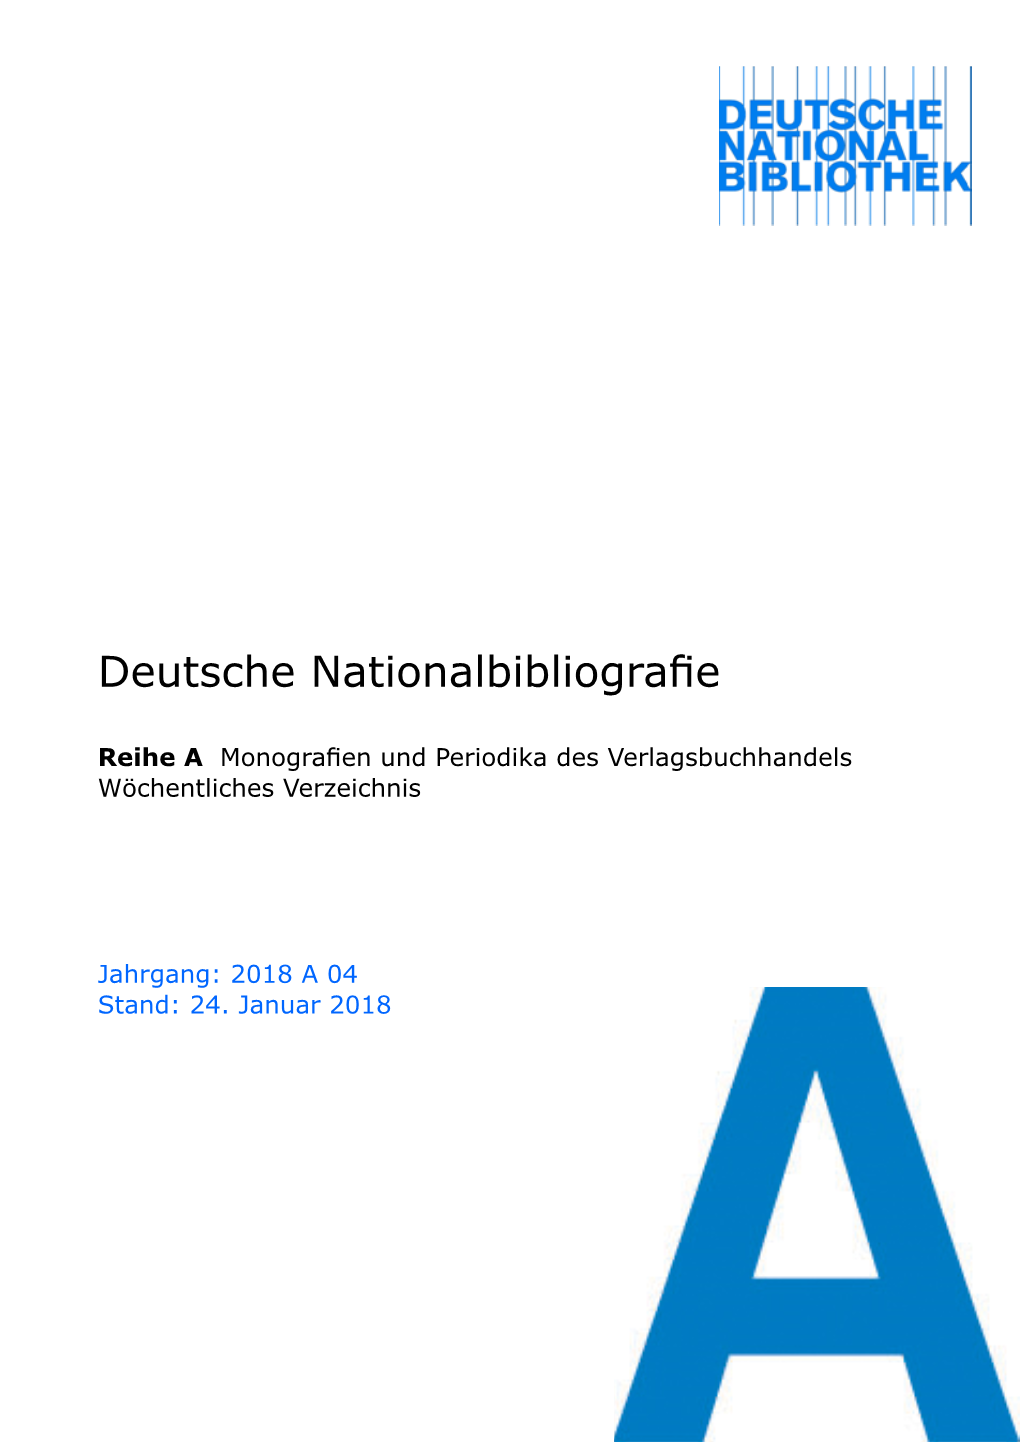 Deutsche Nationalbibliografie 2018 a 04